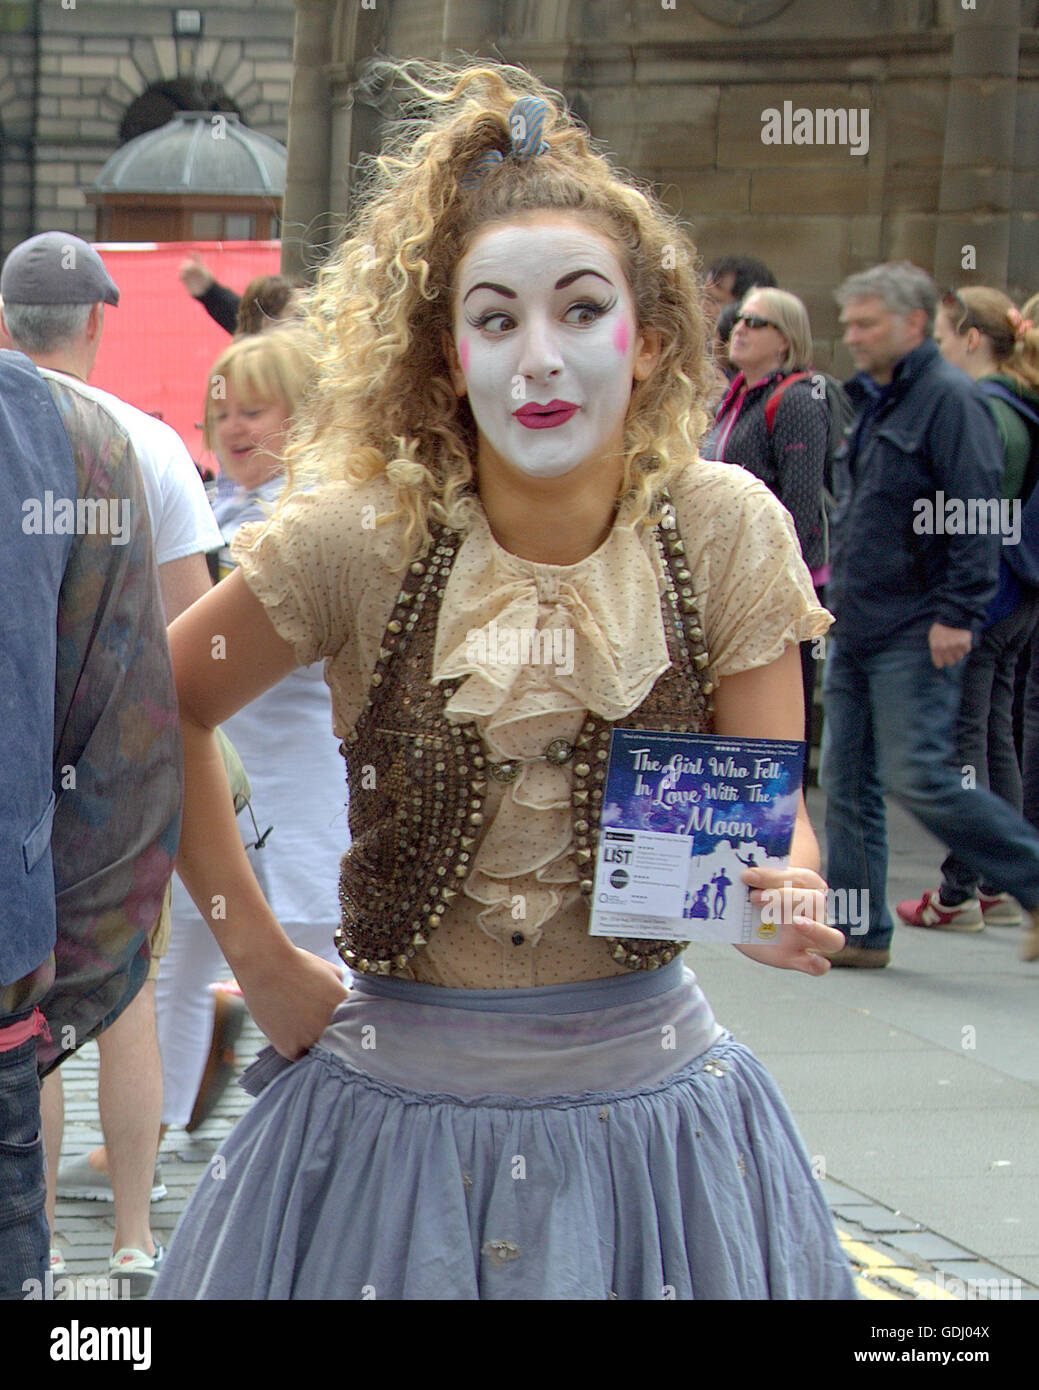 Esecutori di scene dal Edinburgh Festival Fringe vergine sponsorizzato street festival di Edimburgo, Scozia " la ragazza che si innamorò della luna" Foto Stock